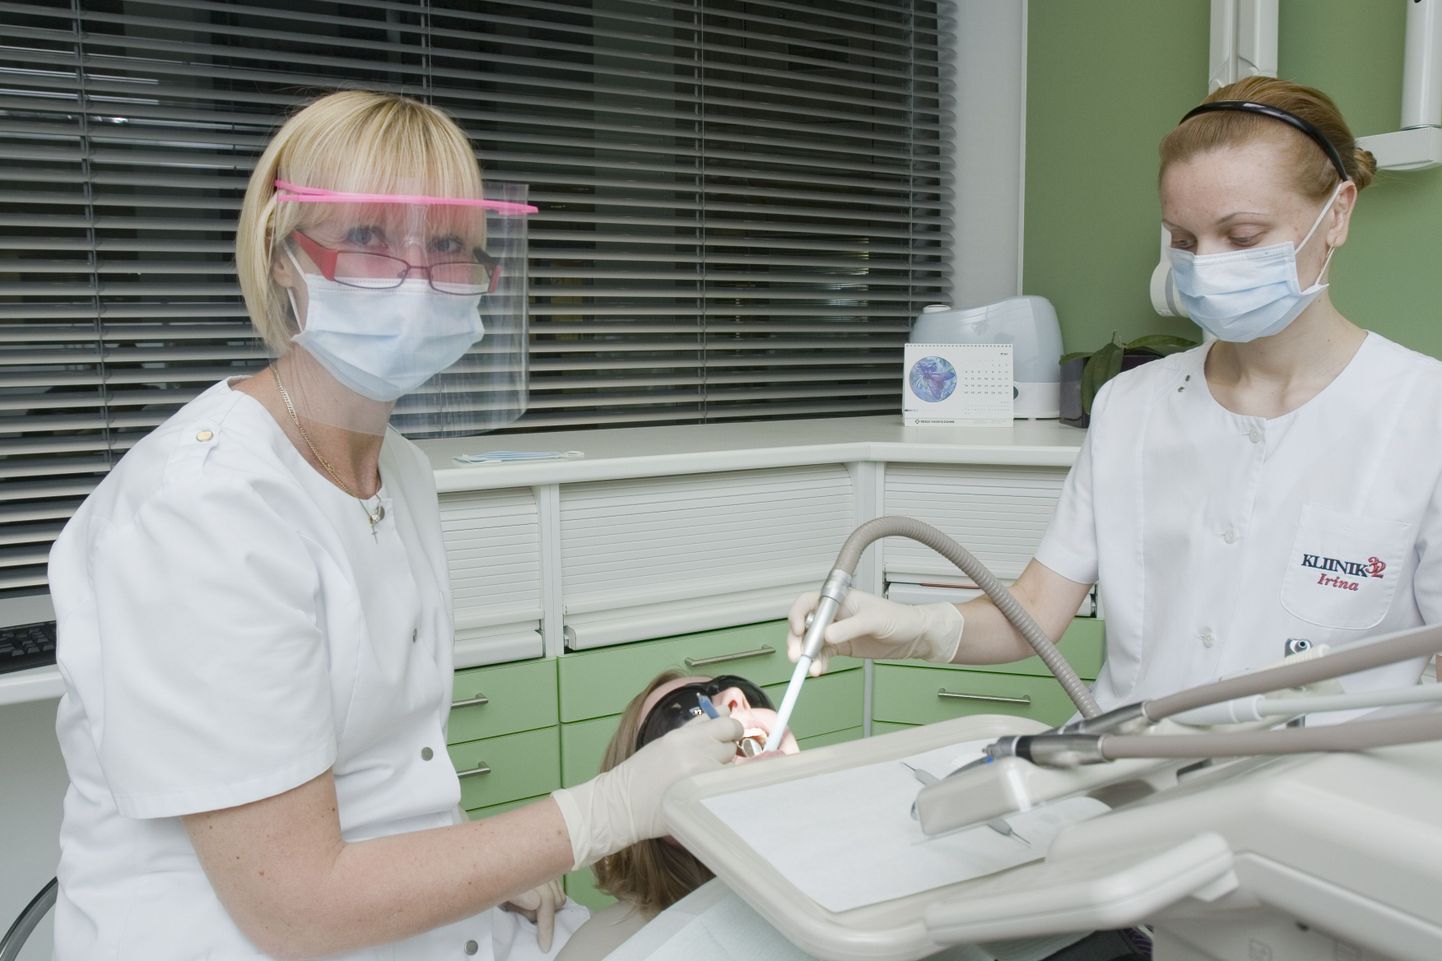 Kliinik32 arsti ja hügienisti Piret Kolki sõnul ei ole hambaspaa ilu- ega luksusteenus, vaid tarvilik protseduur suu tervise hoidmiseks.